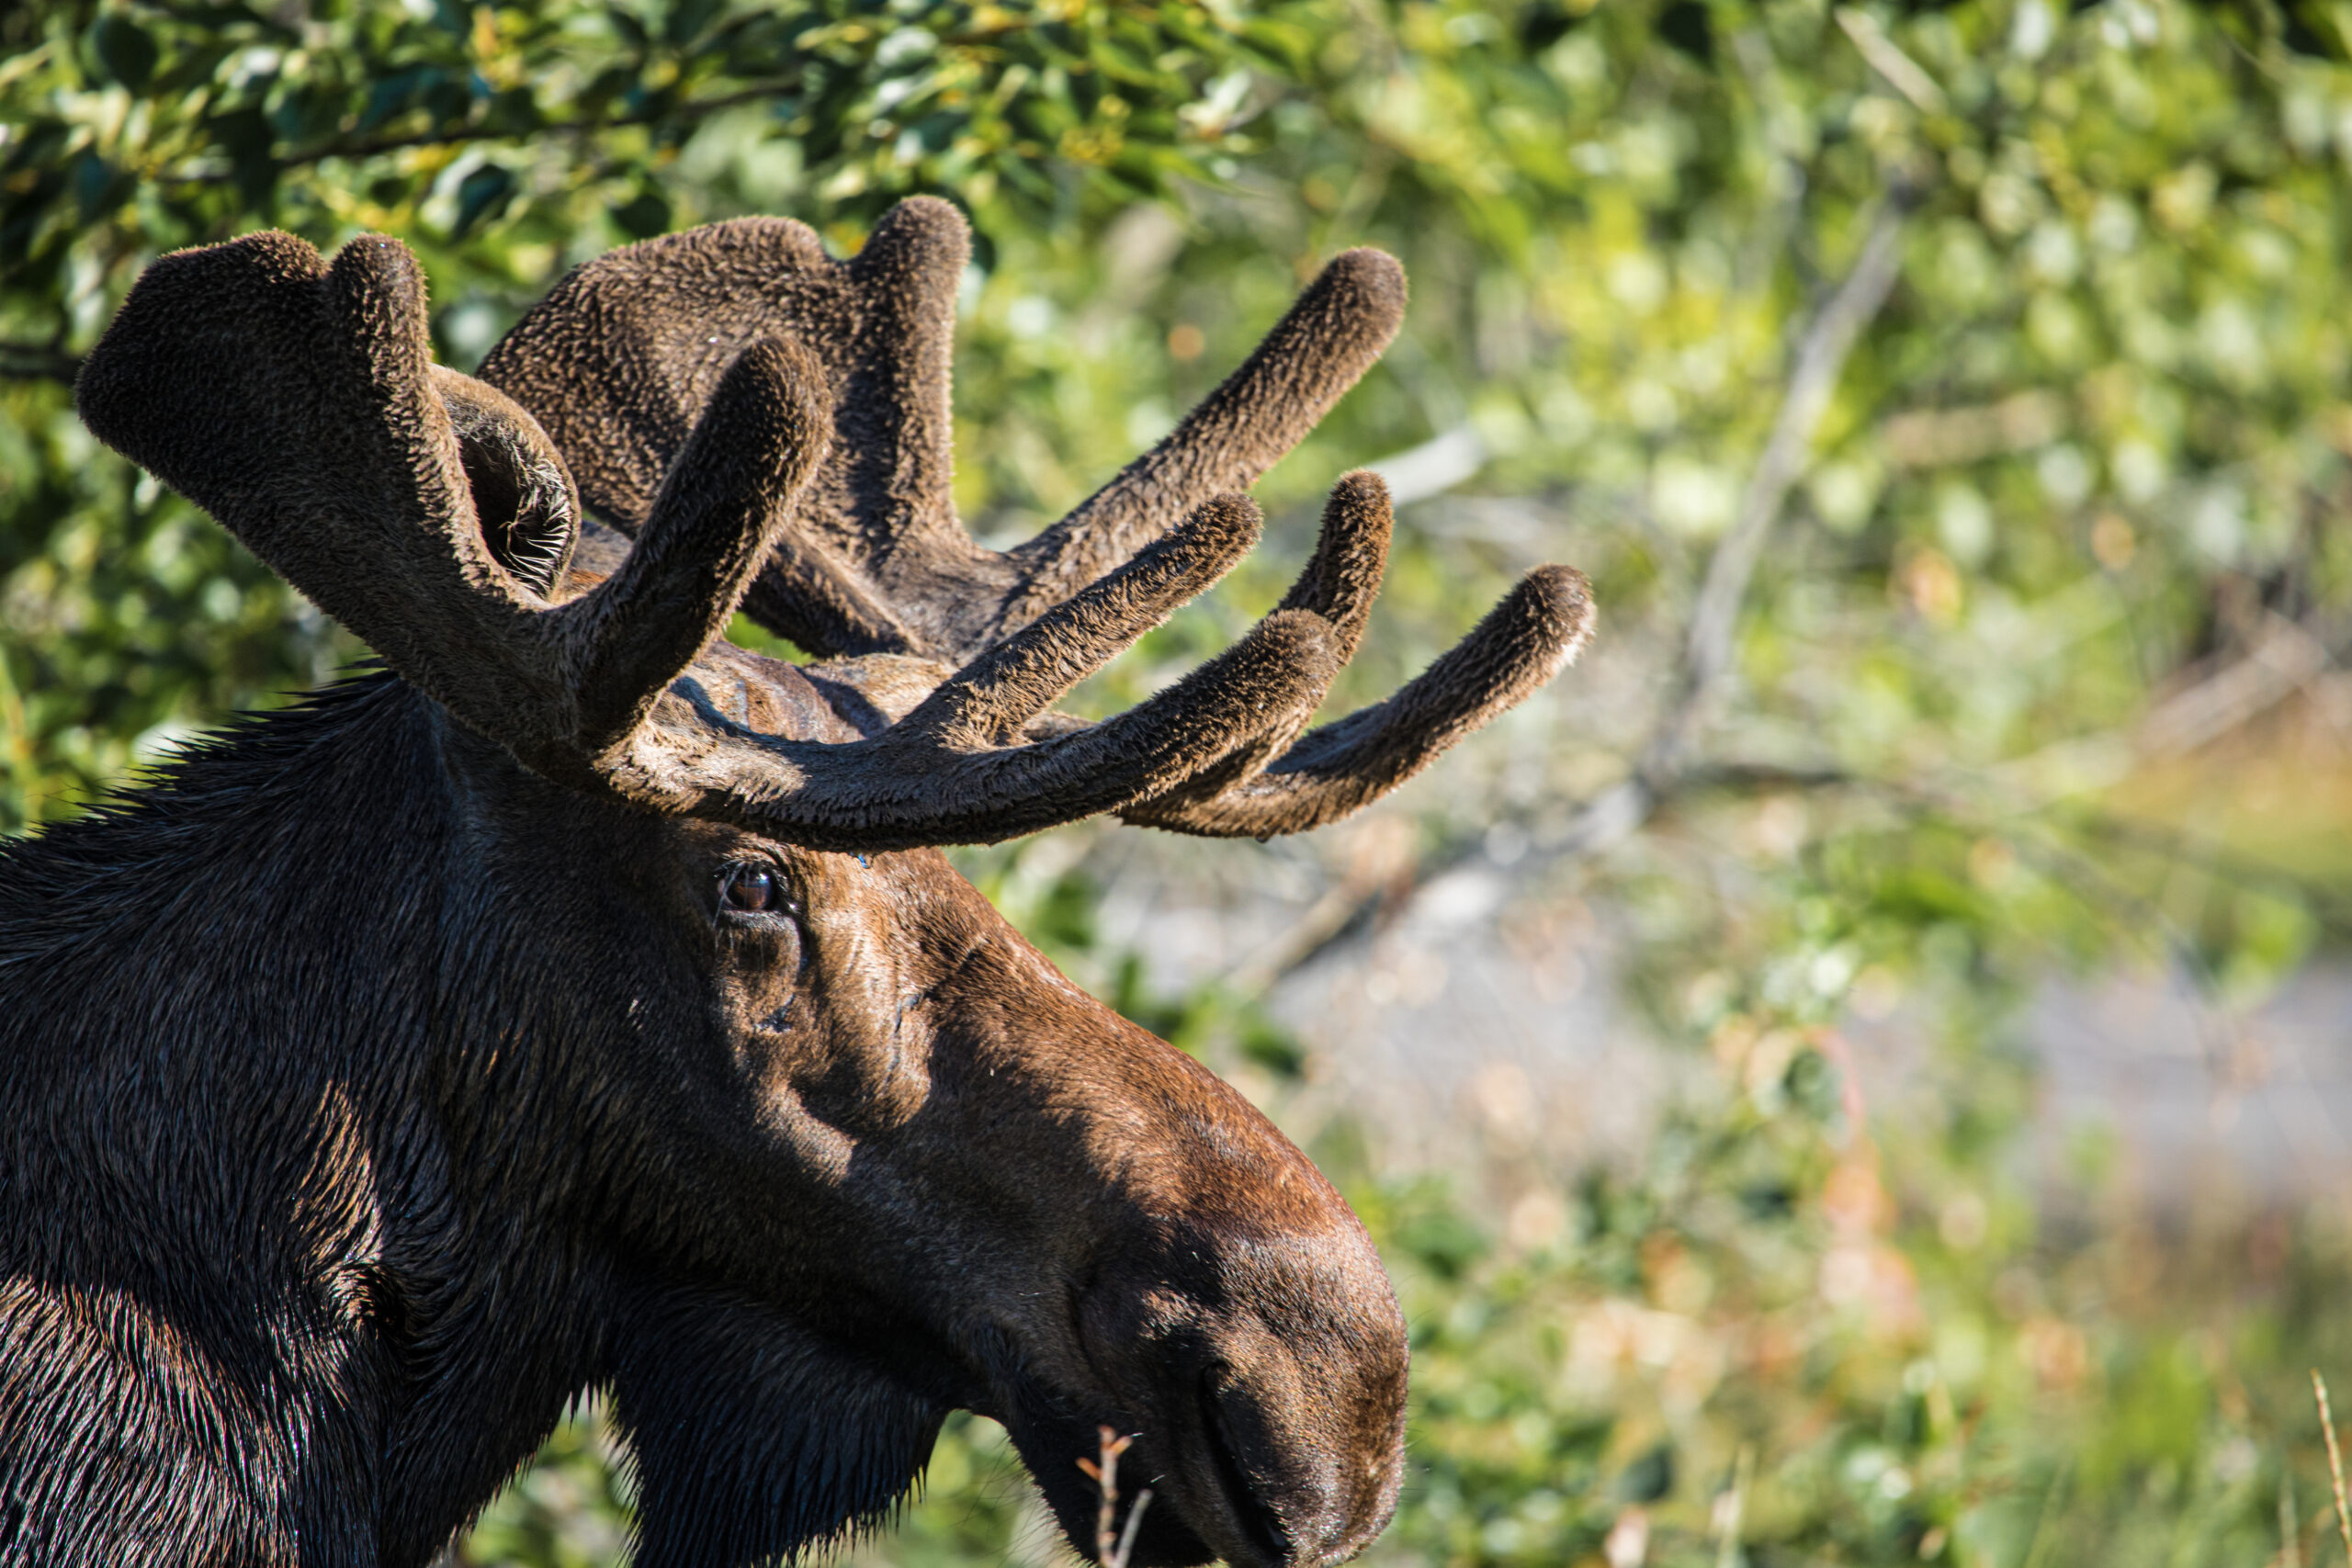 A charging moose was shot and killed at close range by an Idaho camper.